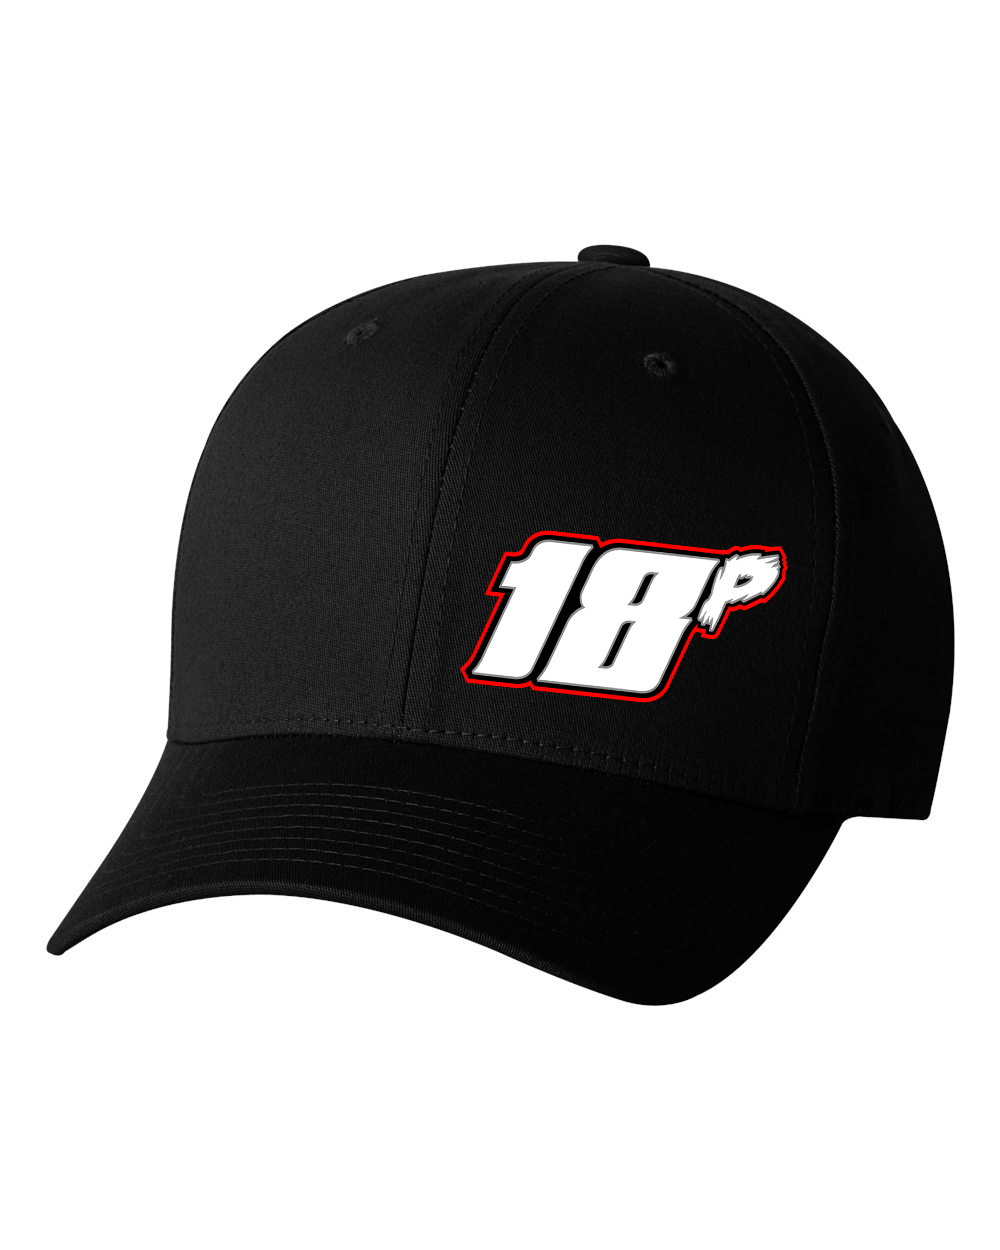 Breadman Racing Hats Black Acid Apparel